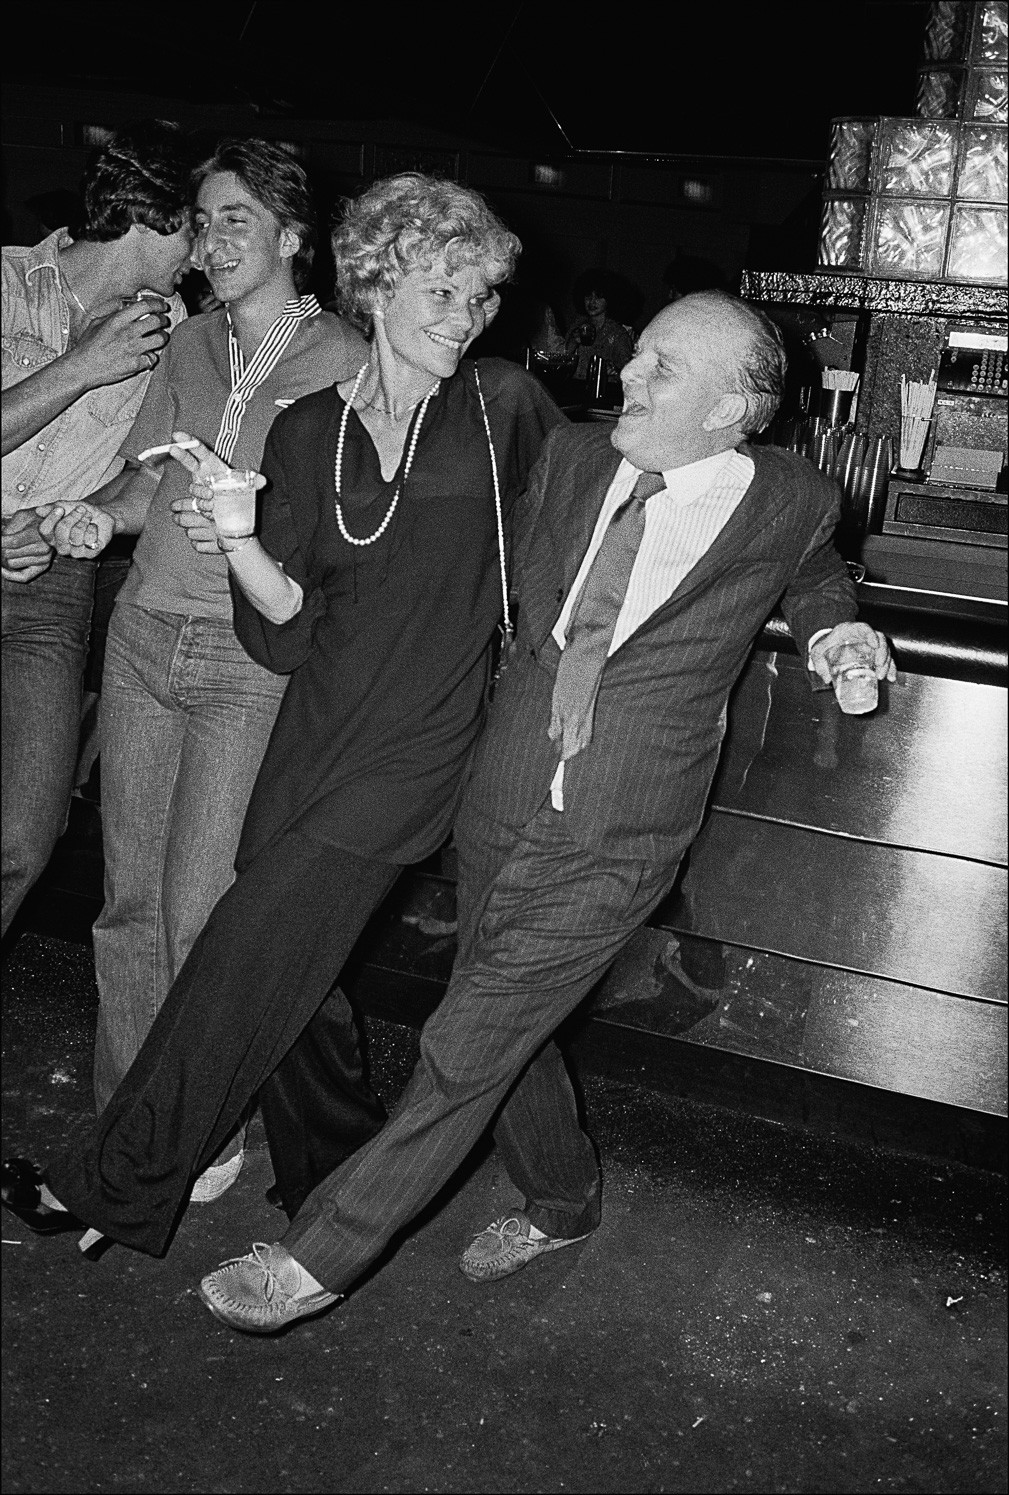 Трумен Капоте у бара с подругой в «Студия 54», 1977 год. Фотограф Аллан Танненбаум